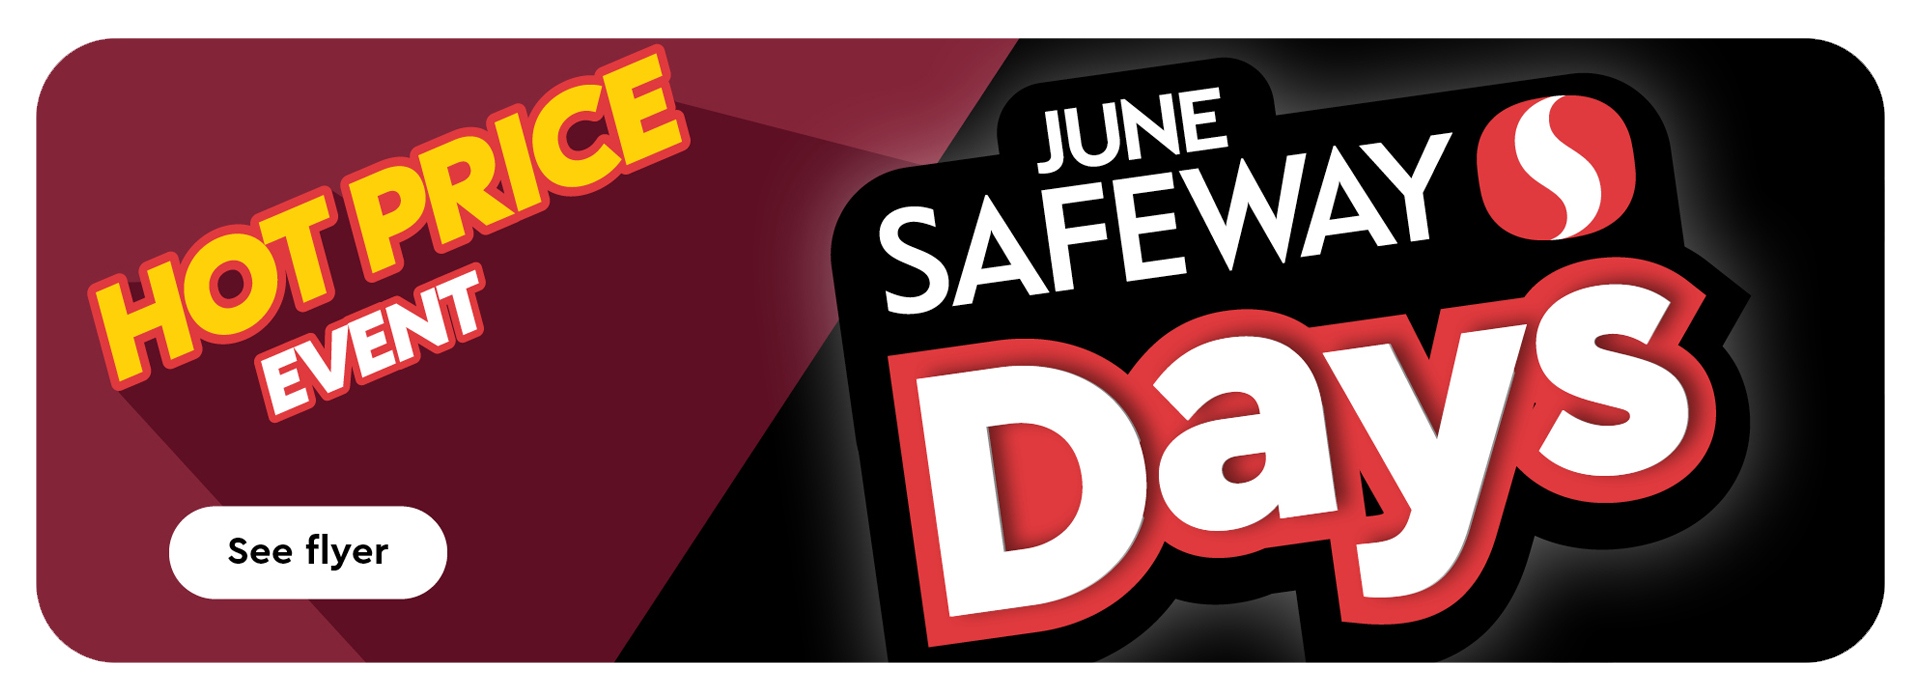 Hot Price Event June Safeway Days